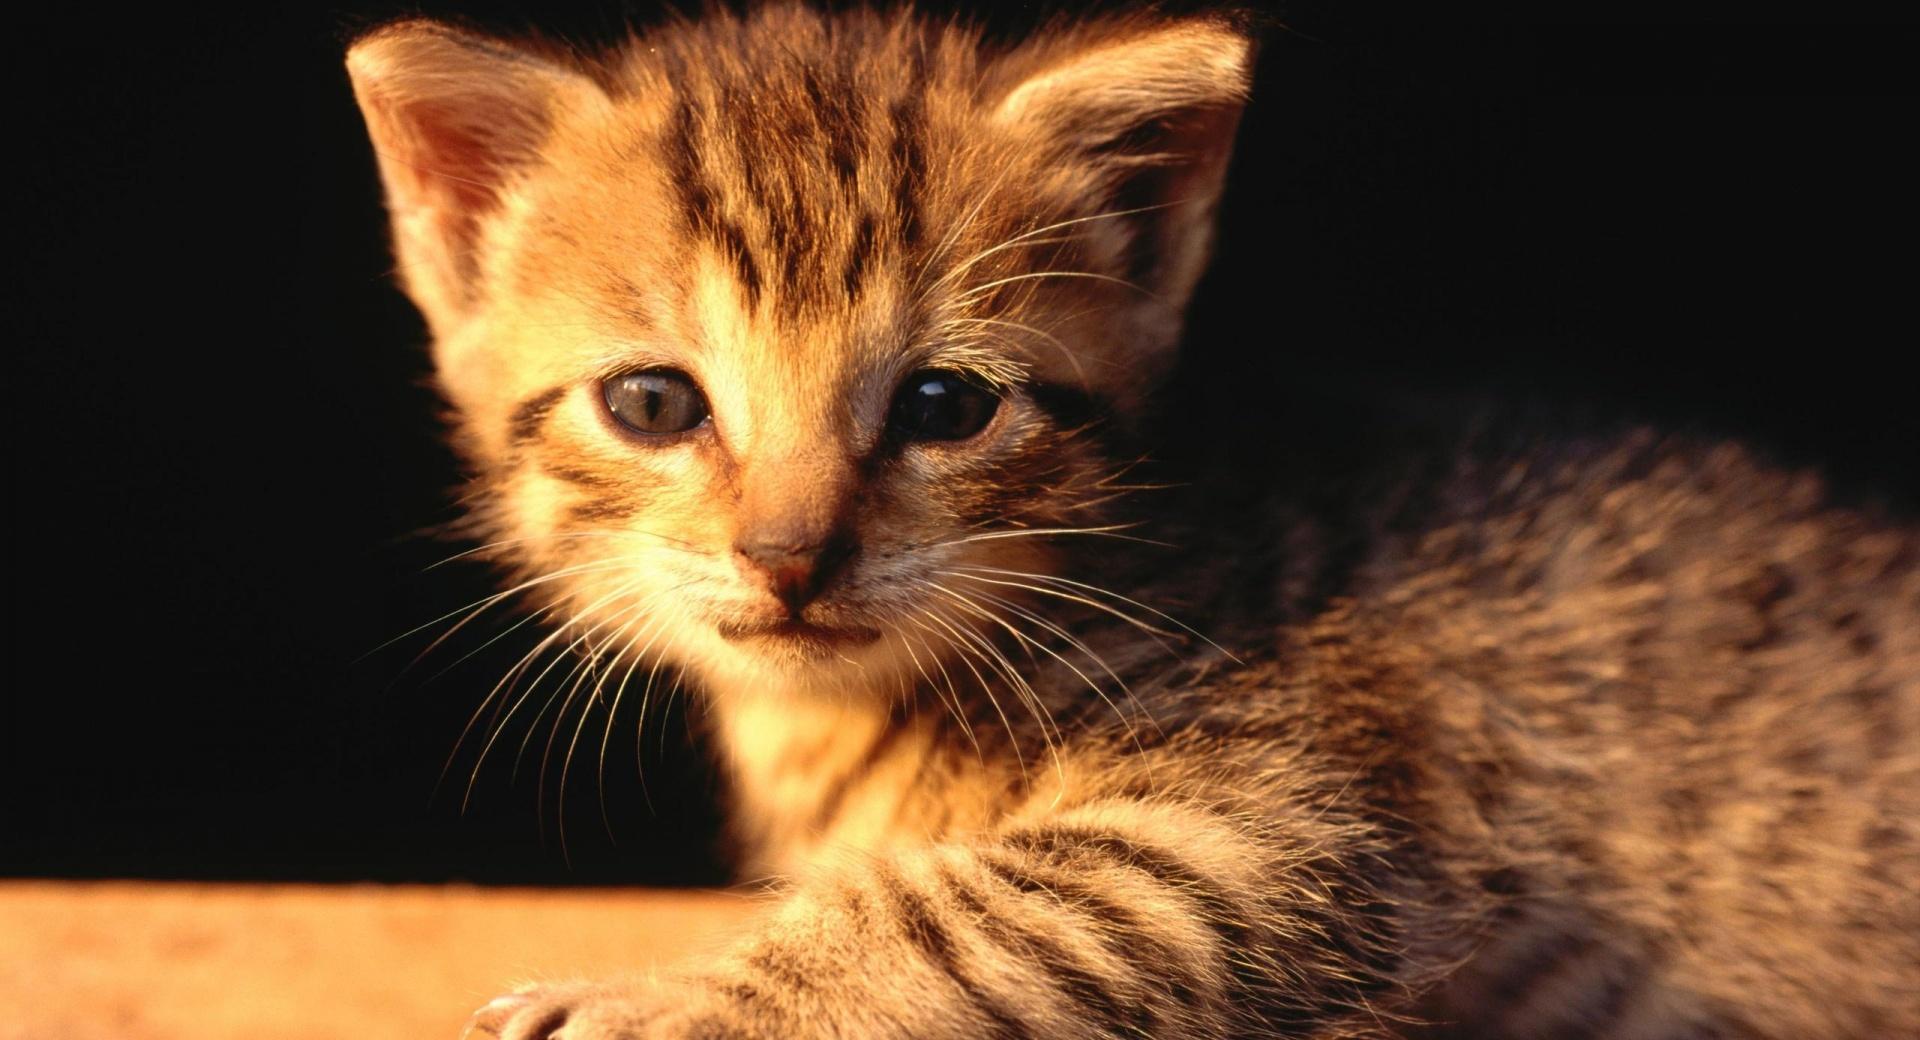 Newborn Tabby Kitten at 1024 x 1024 iPad size wallpapers HD quality